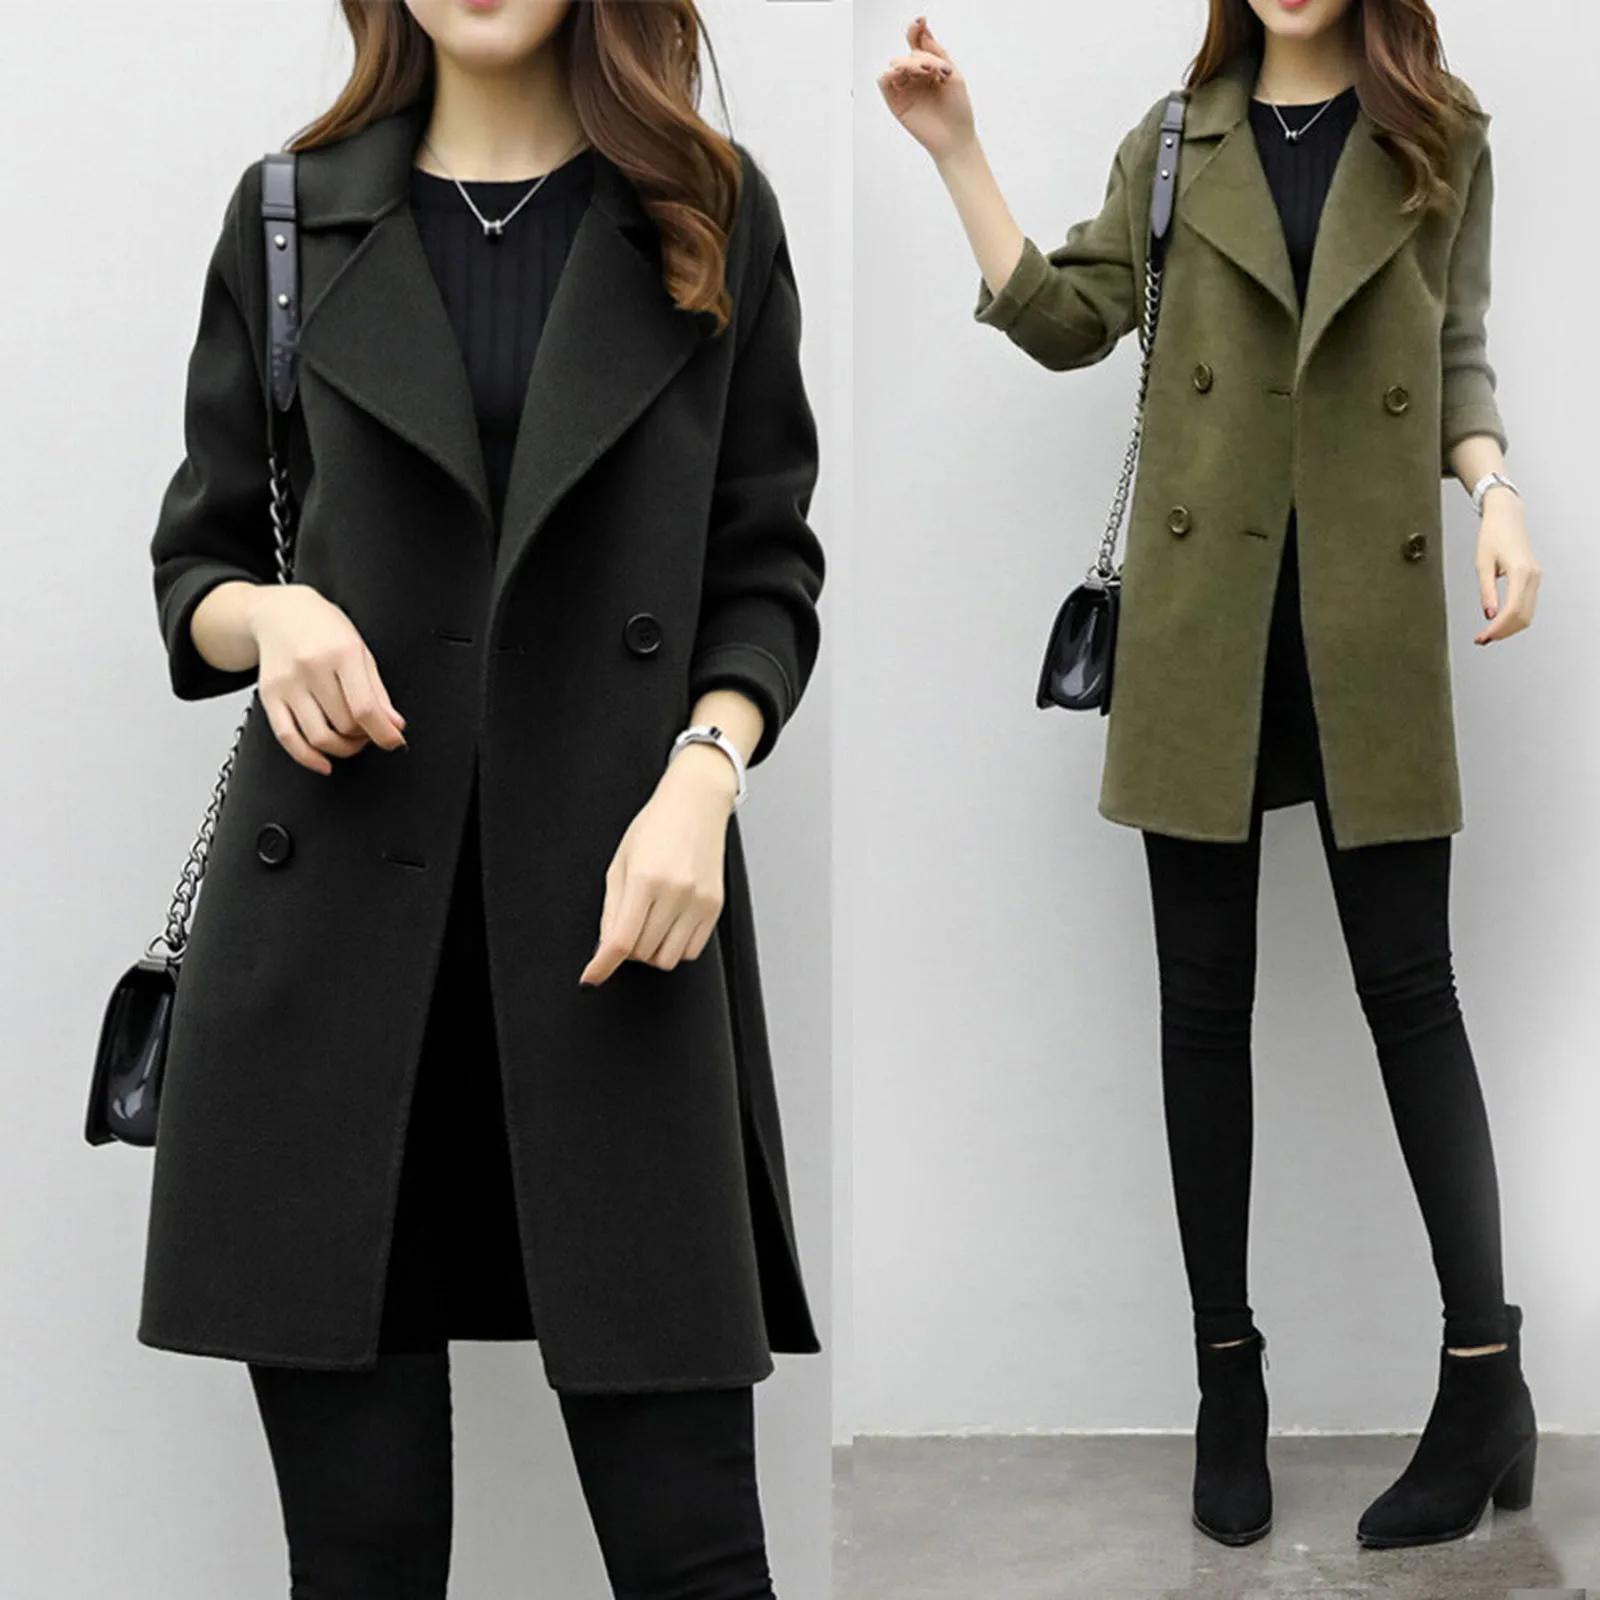 Купить одежду пальто. Женское пальто. Чёрное пальто женское. Стильное пальто. Двубортное пальто женское.